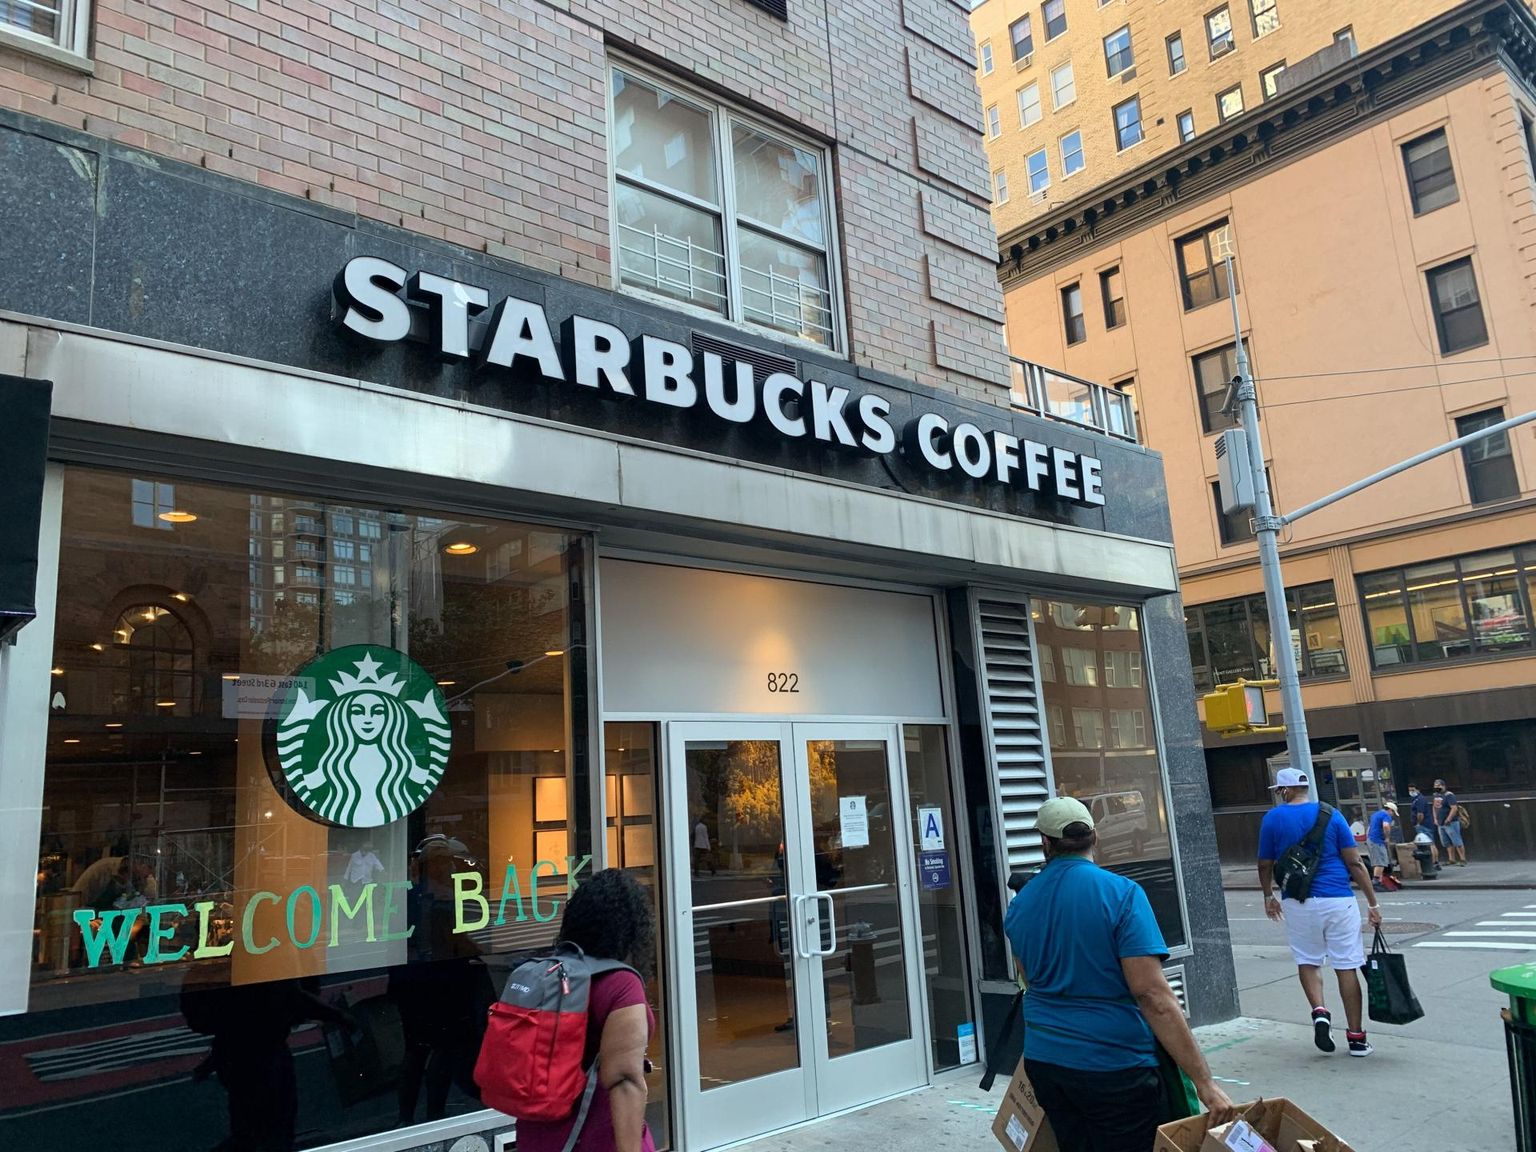 Ühena viimastest kuulutas Facebookis reklaamiboikoti välja maailma suurim kohvikukett Starbucks. 